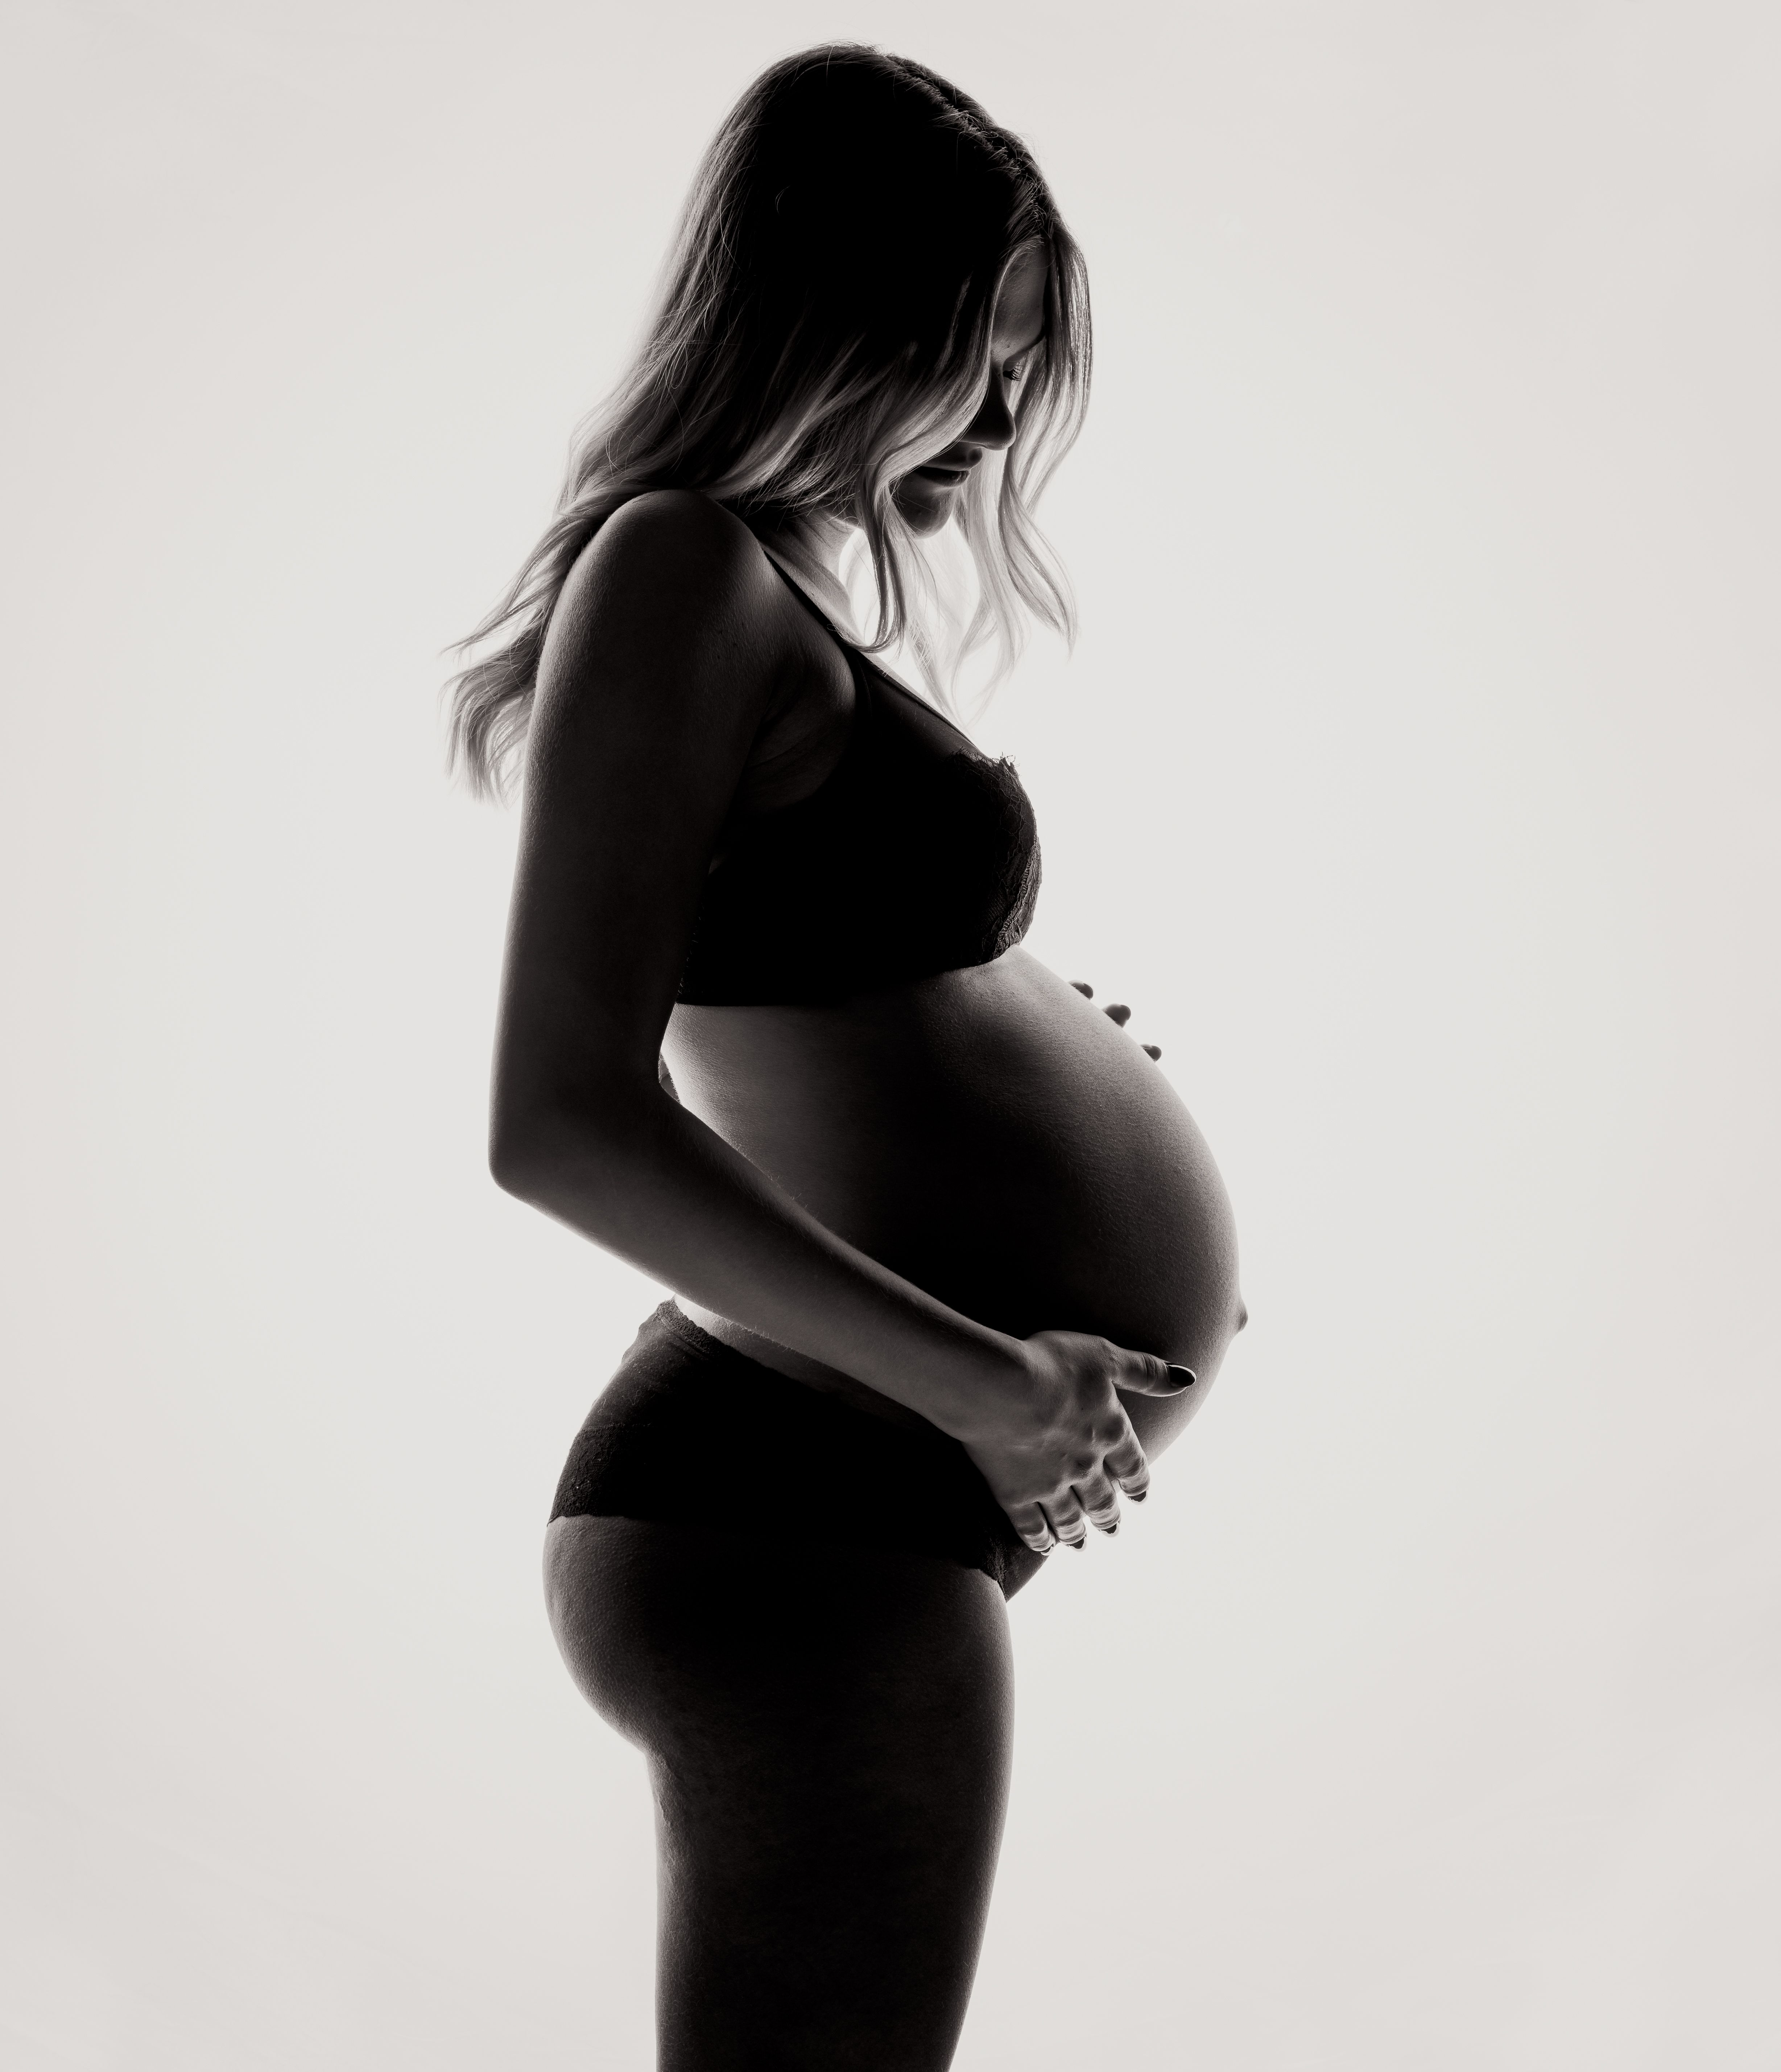 Pregnant Woman · Free